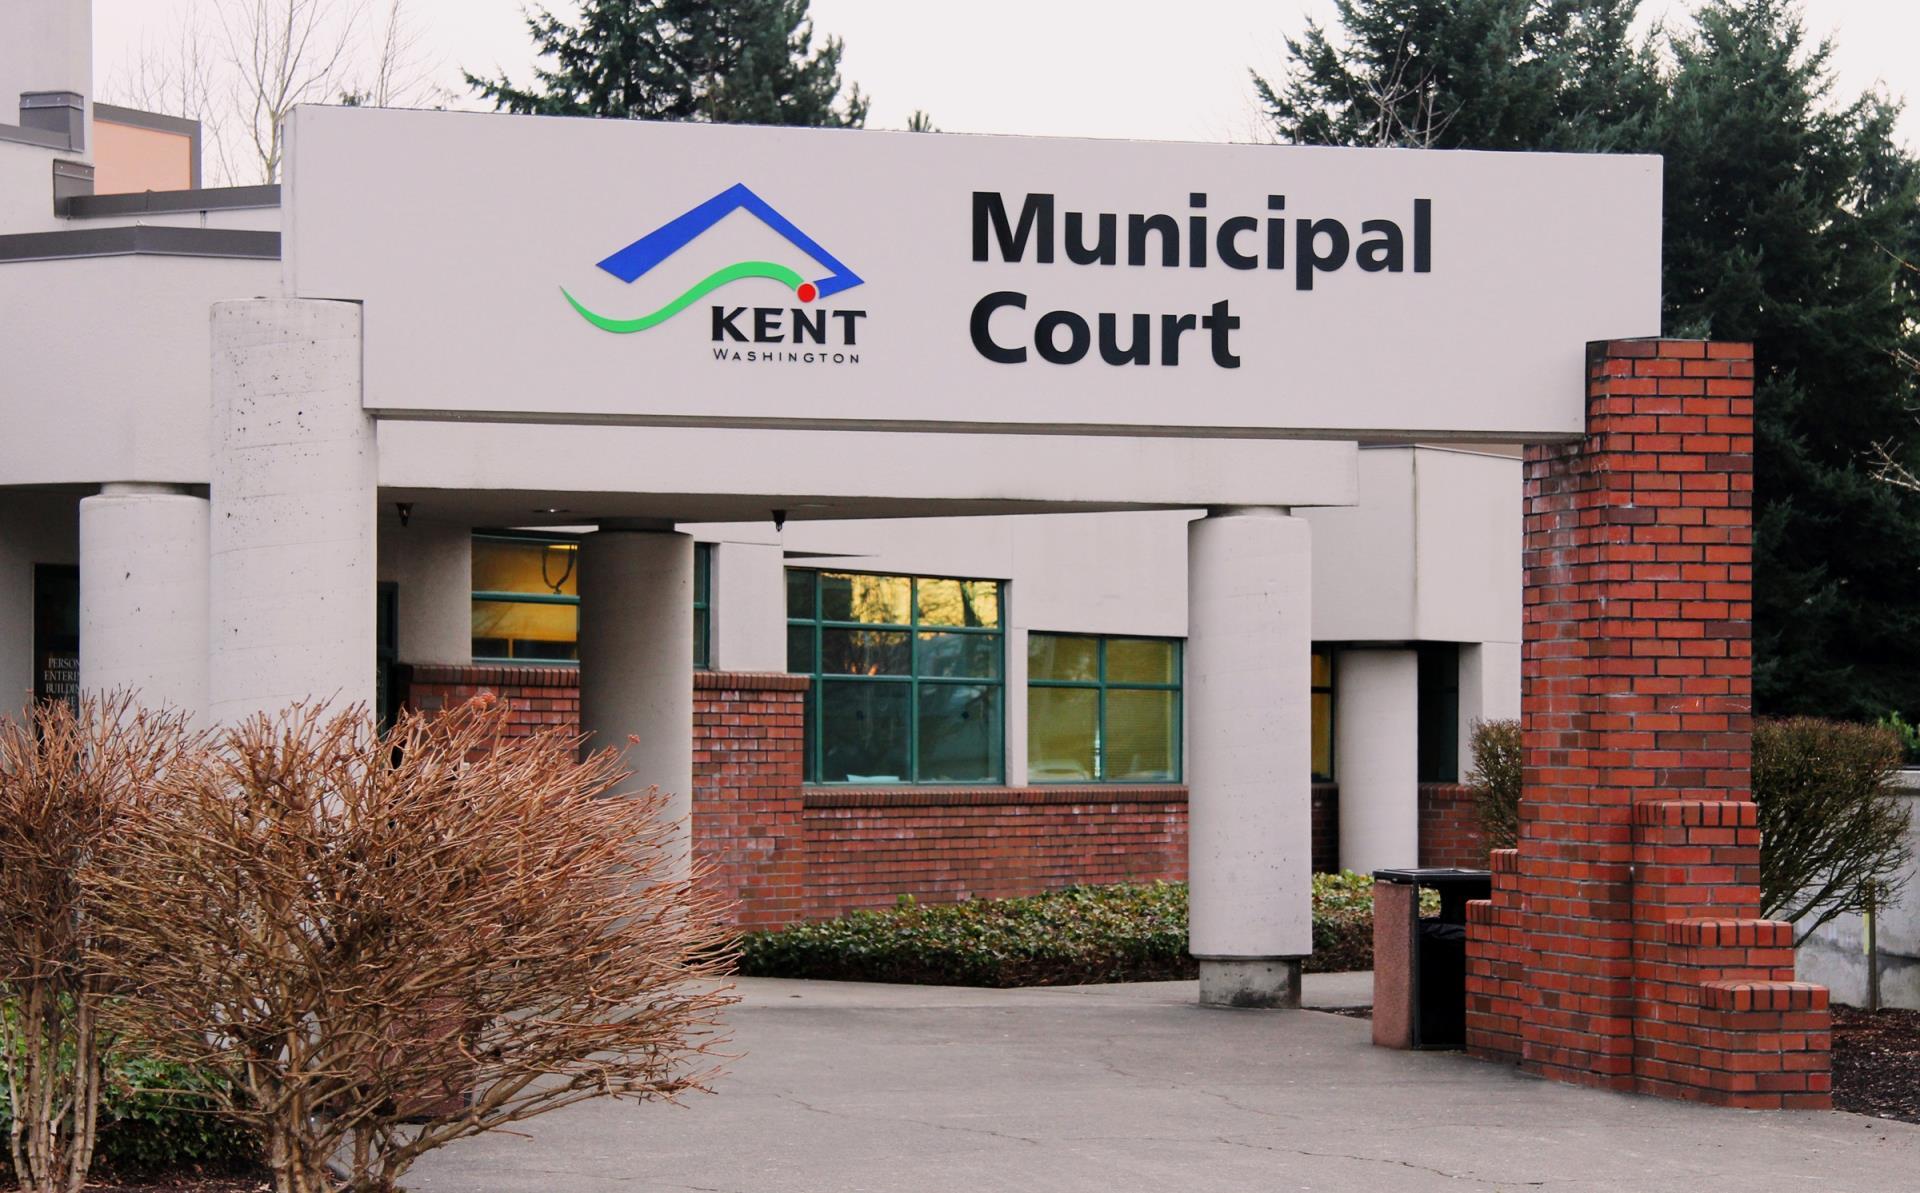 City of Kent WA Logo - Municipal Court. City of Kent